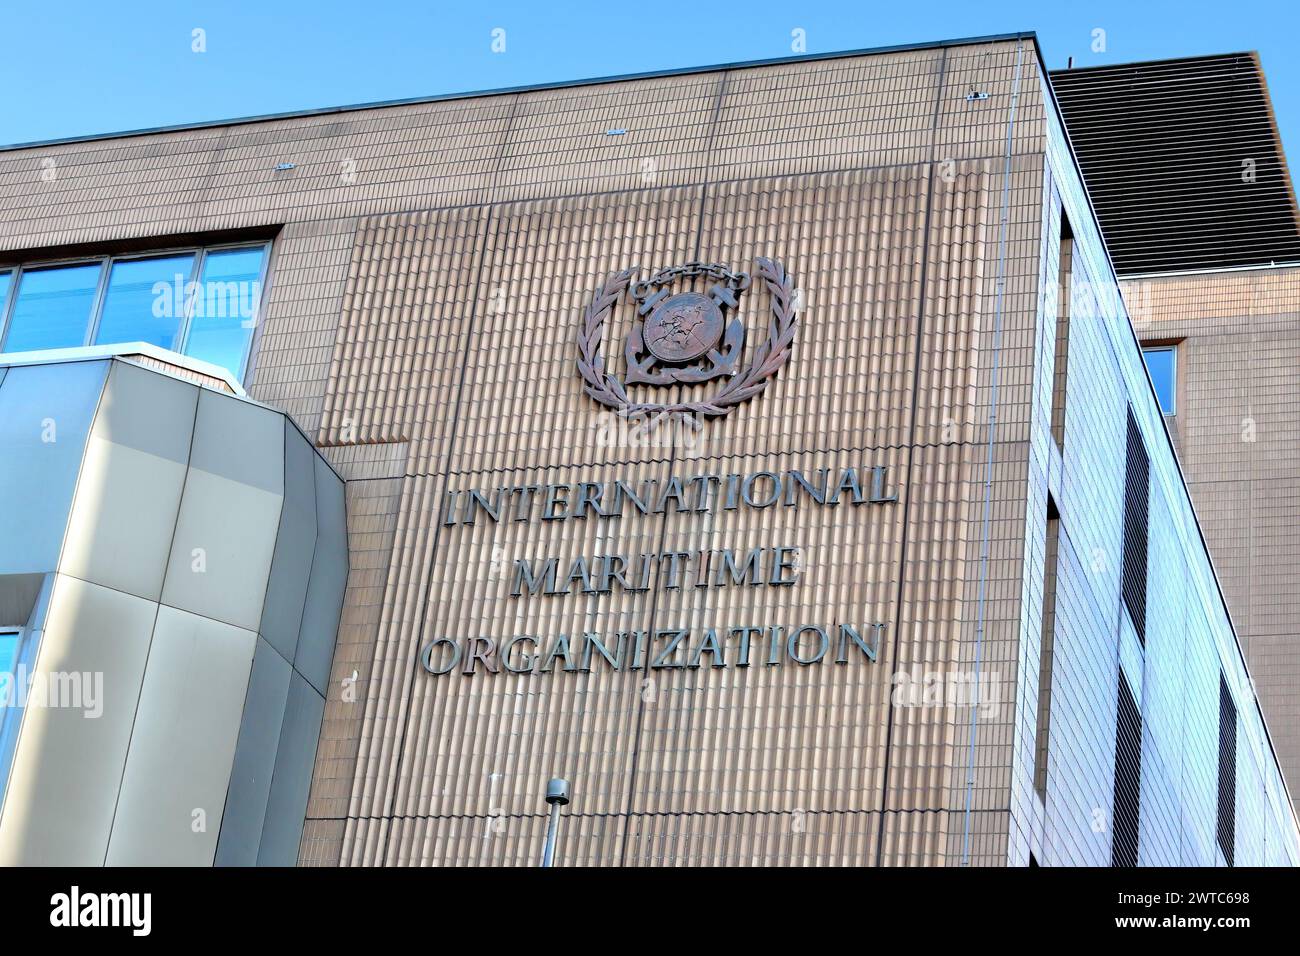 Sitz der Internationalen Seeschifffahrtsorganisation (IMO) in London, einer Sonderorganisation der Vereinten Nationen, die für die Regulierung der Schifffahrt zuständig ist Stockfoto